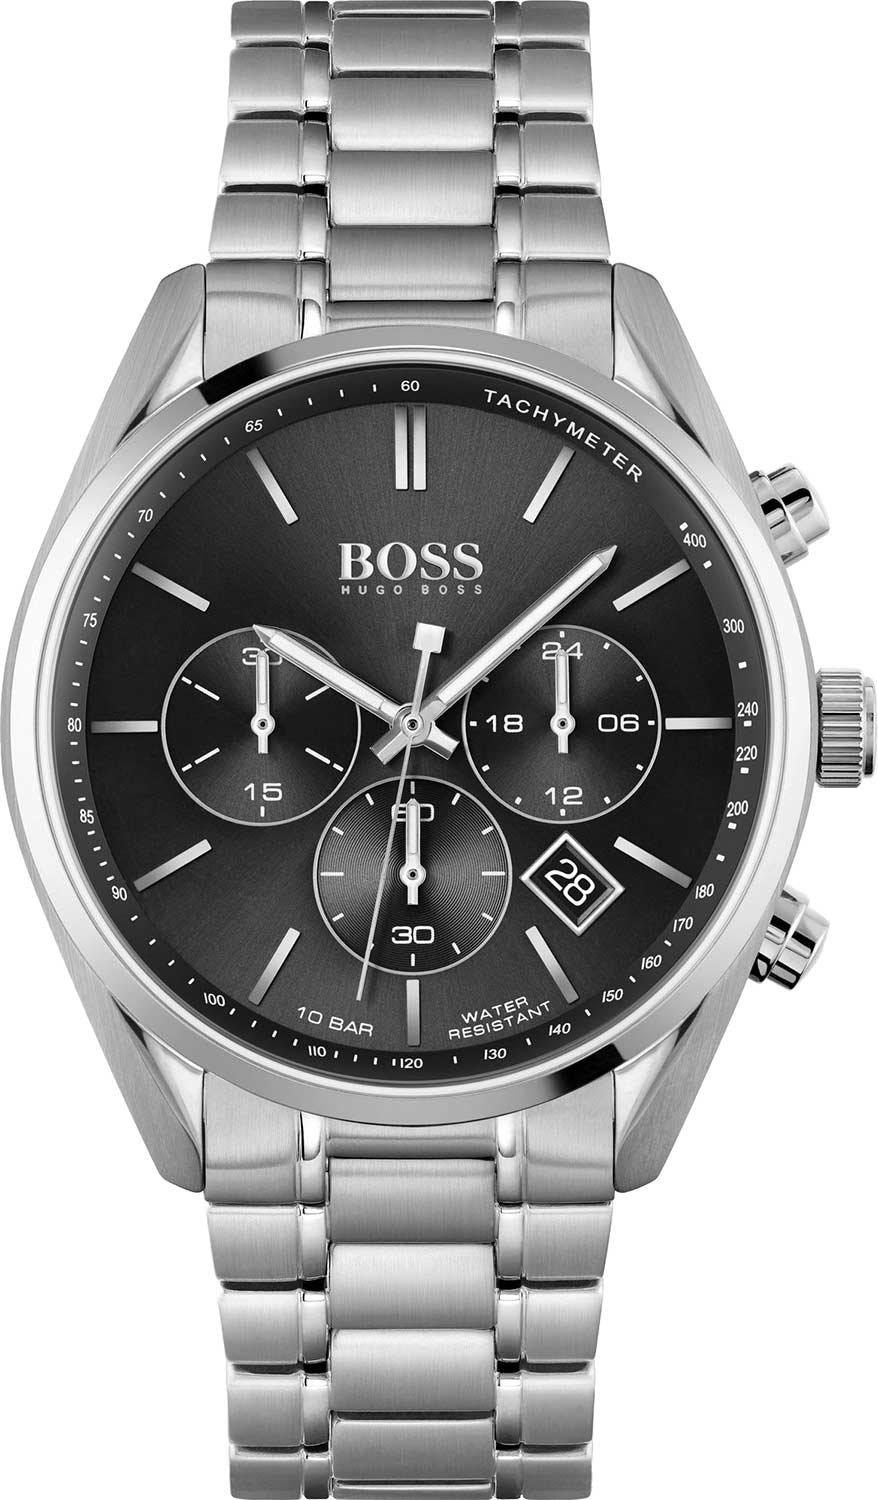   Hugo Boss HB1513871  